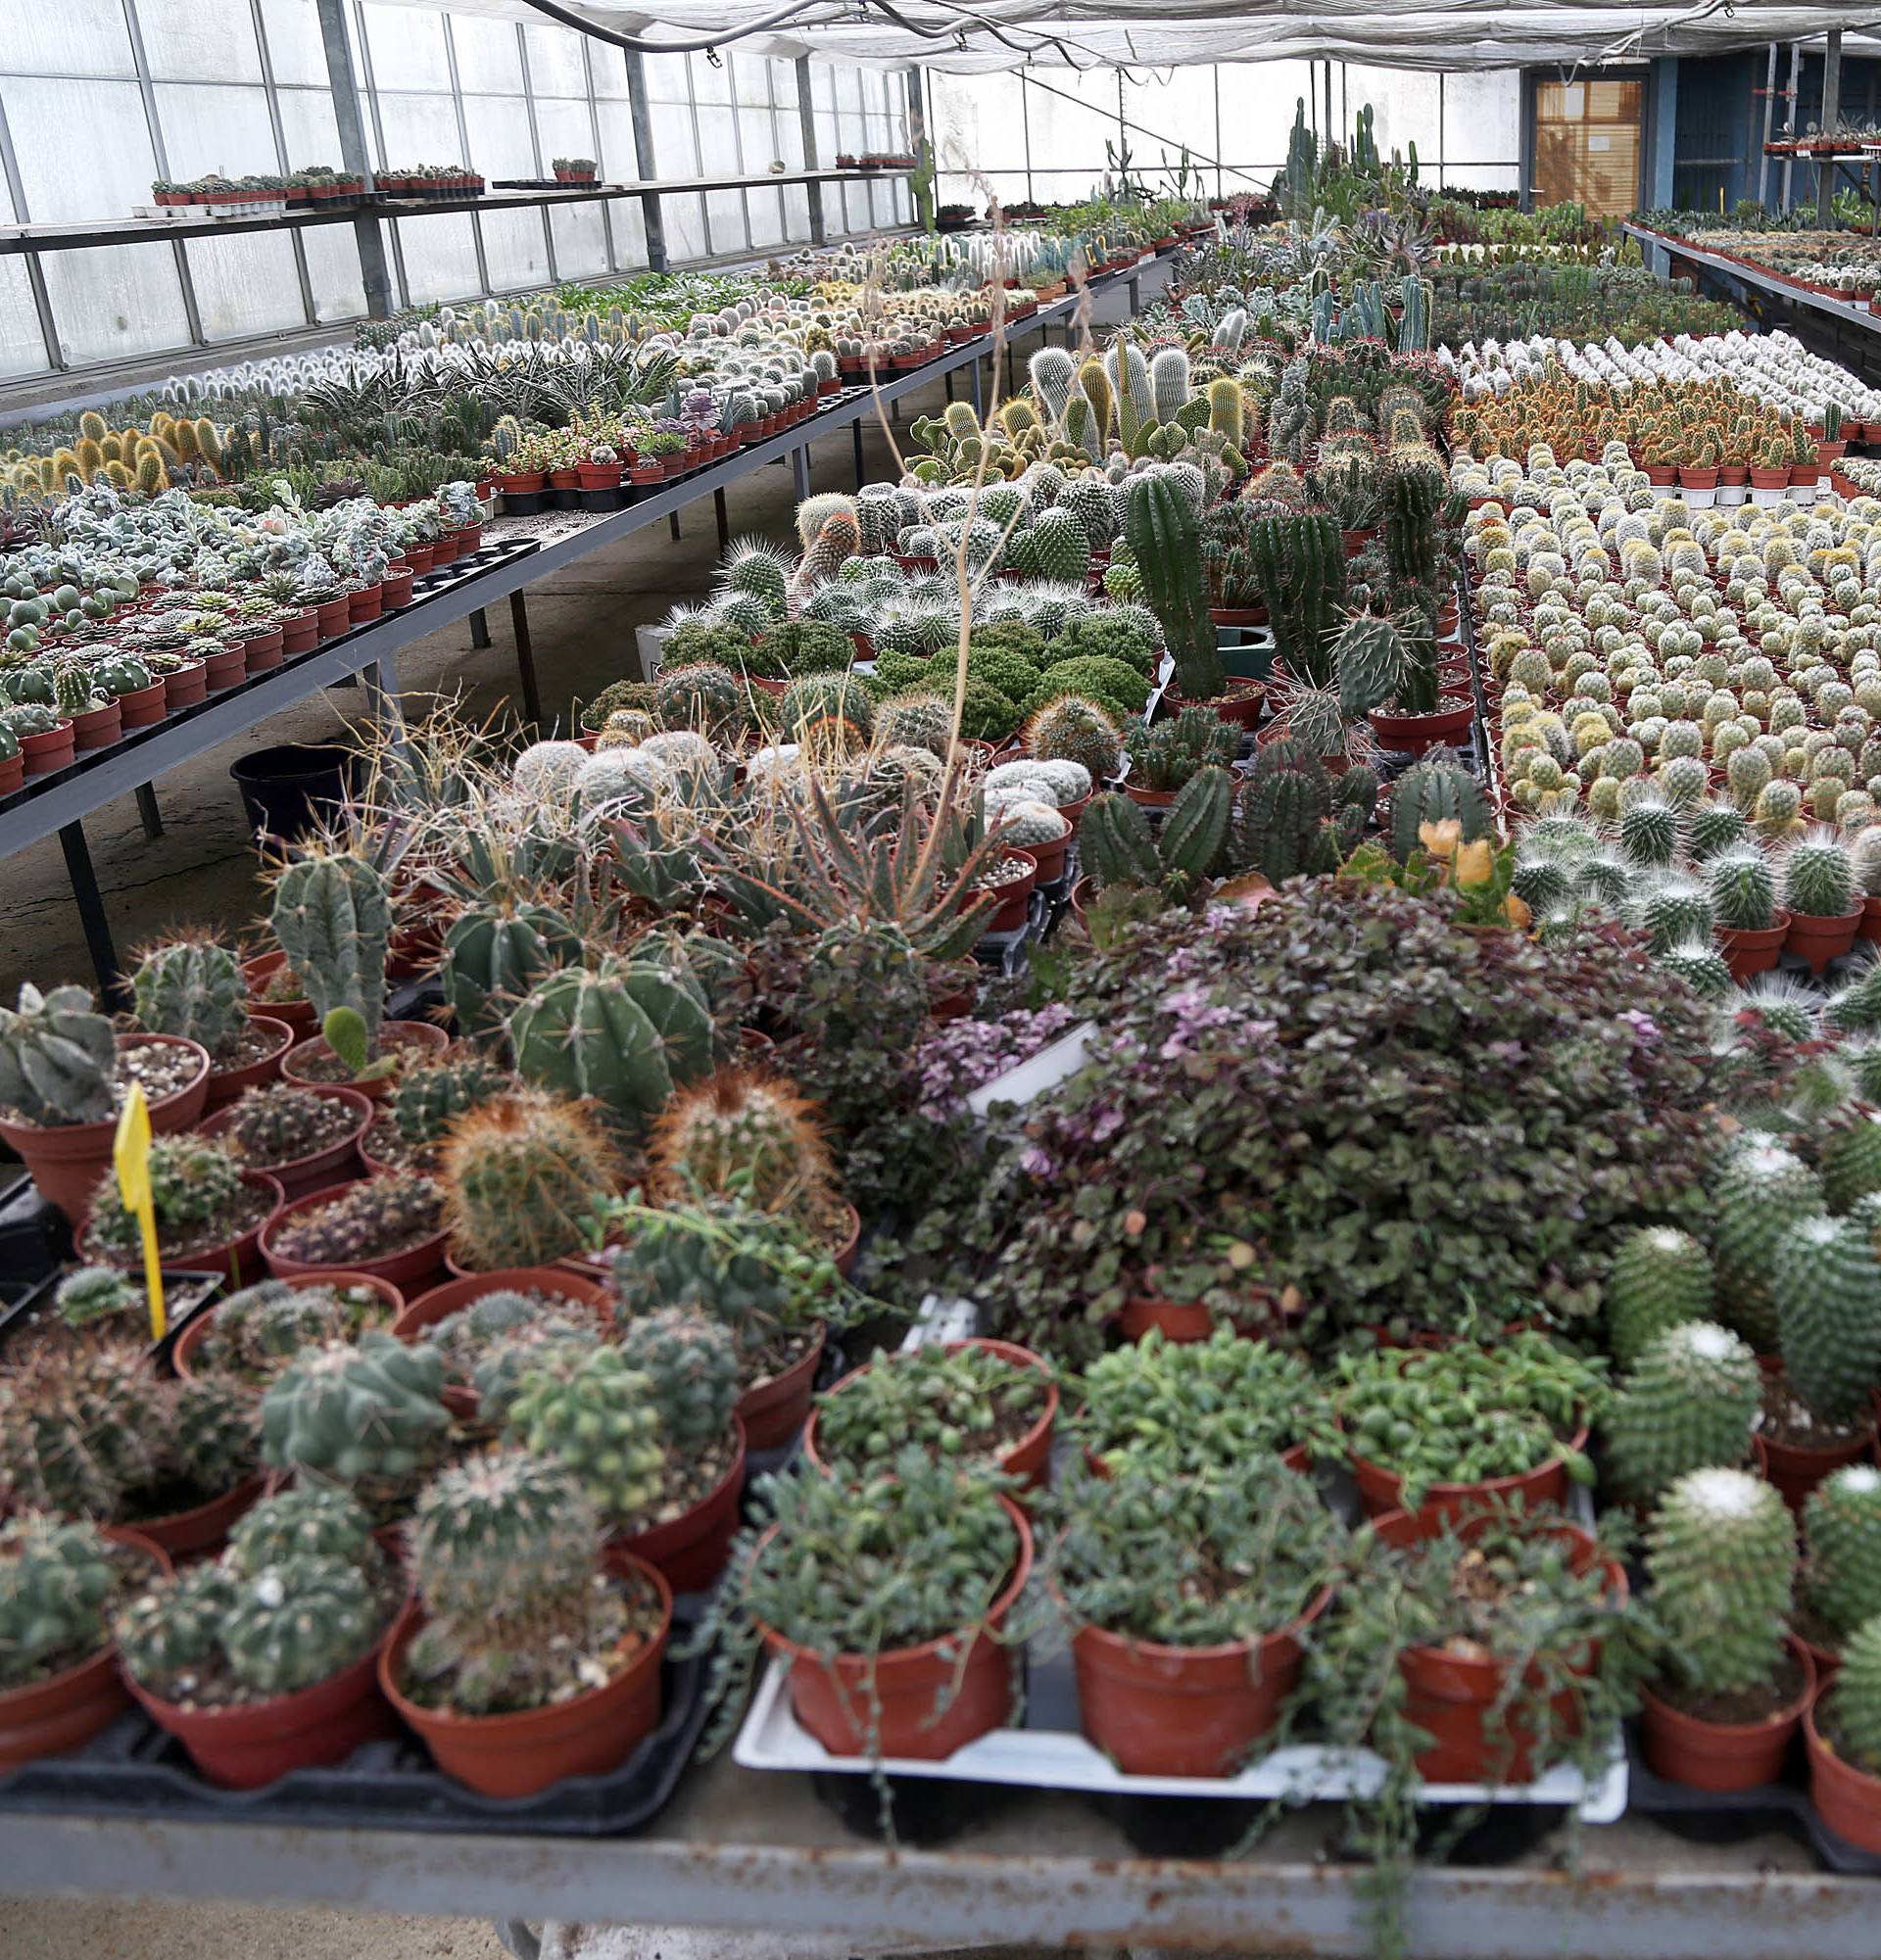 'Kralj kaktusa' ima 50 tisuća primjeraka u svom stakleniku